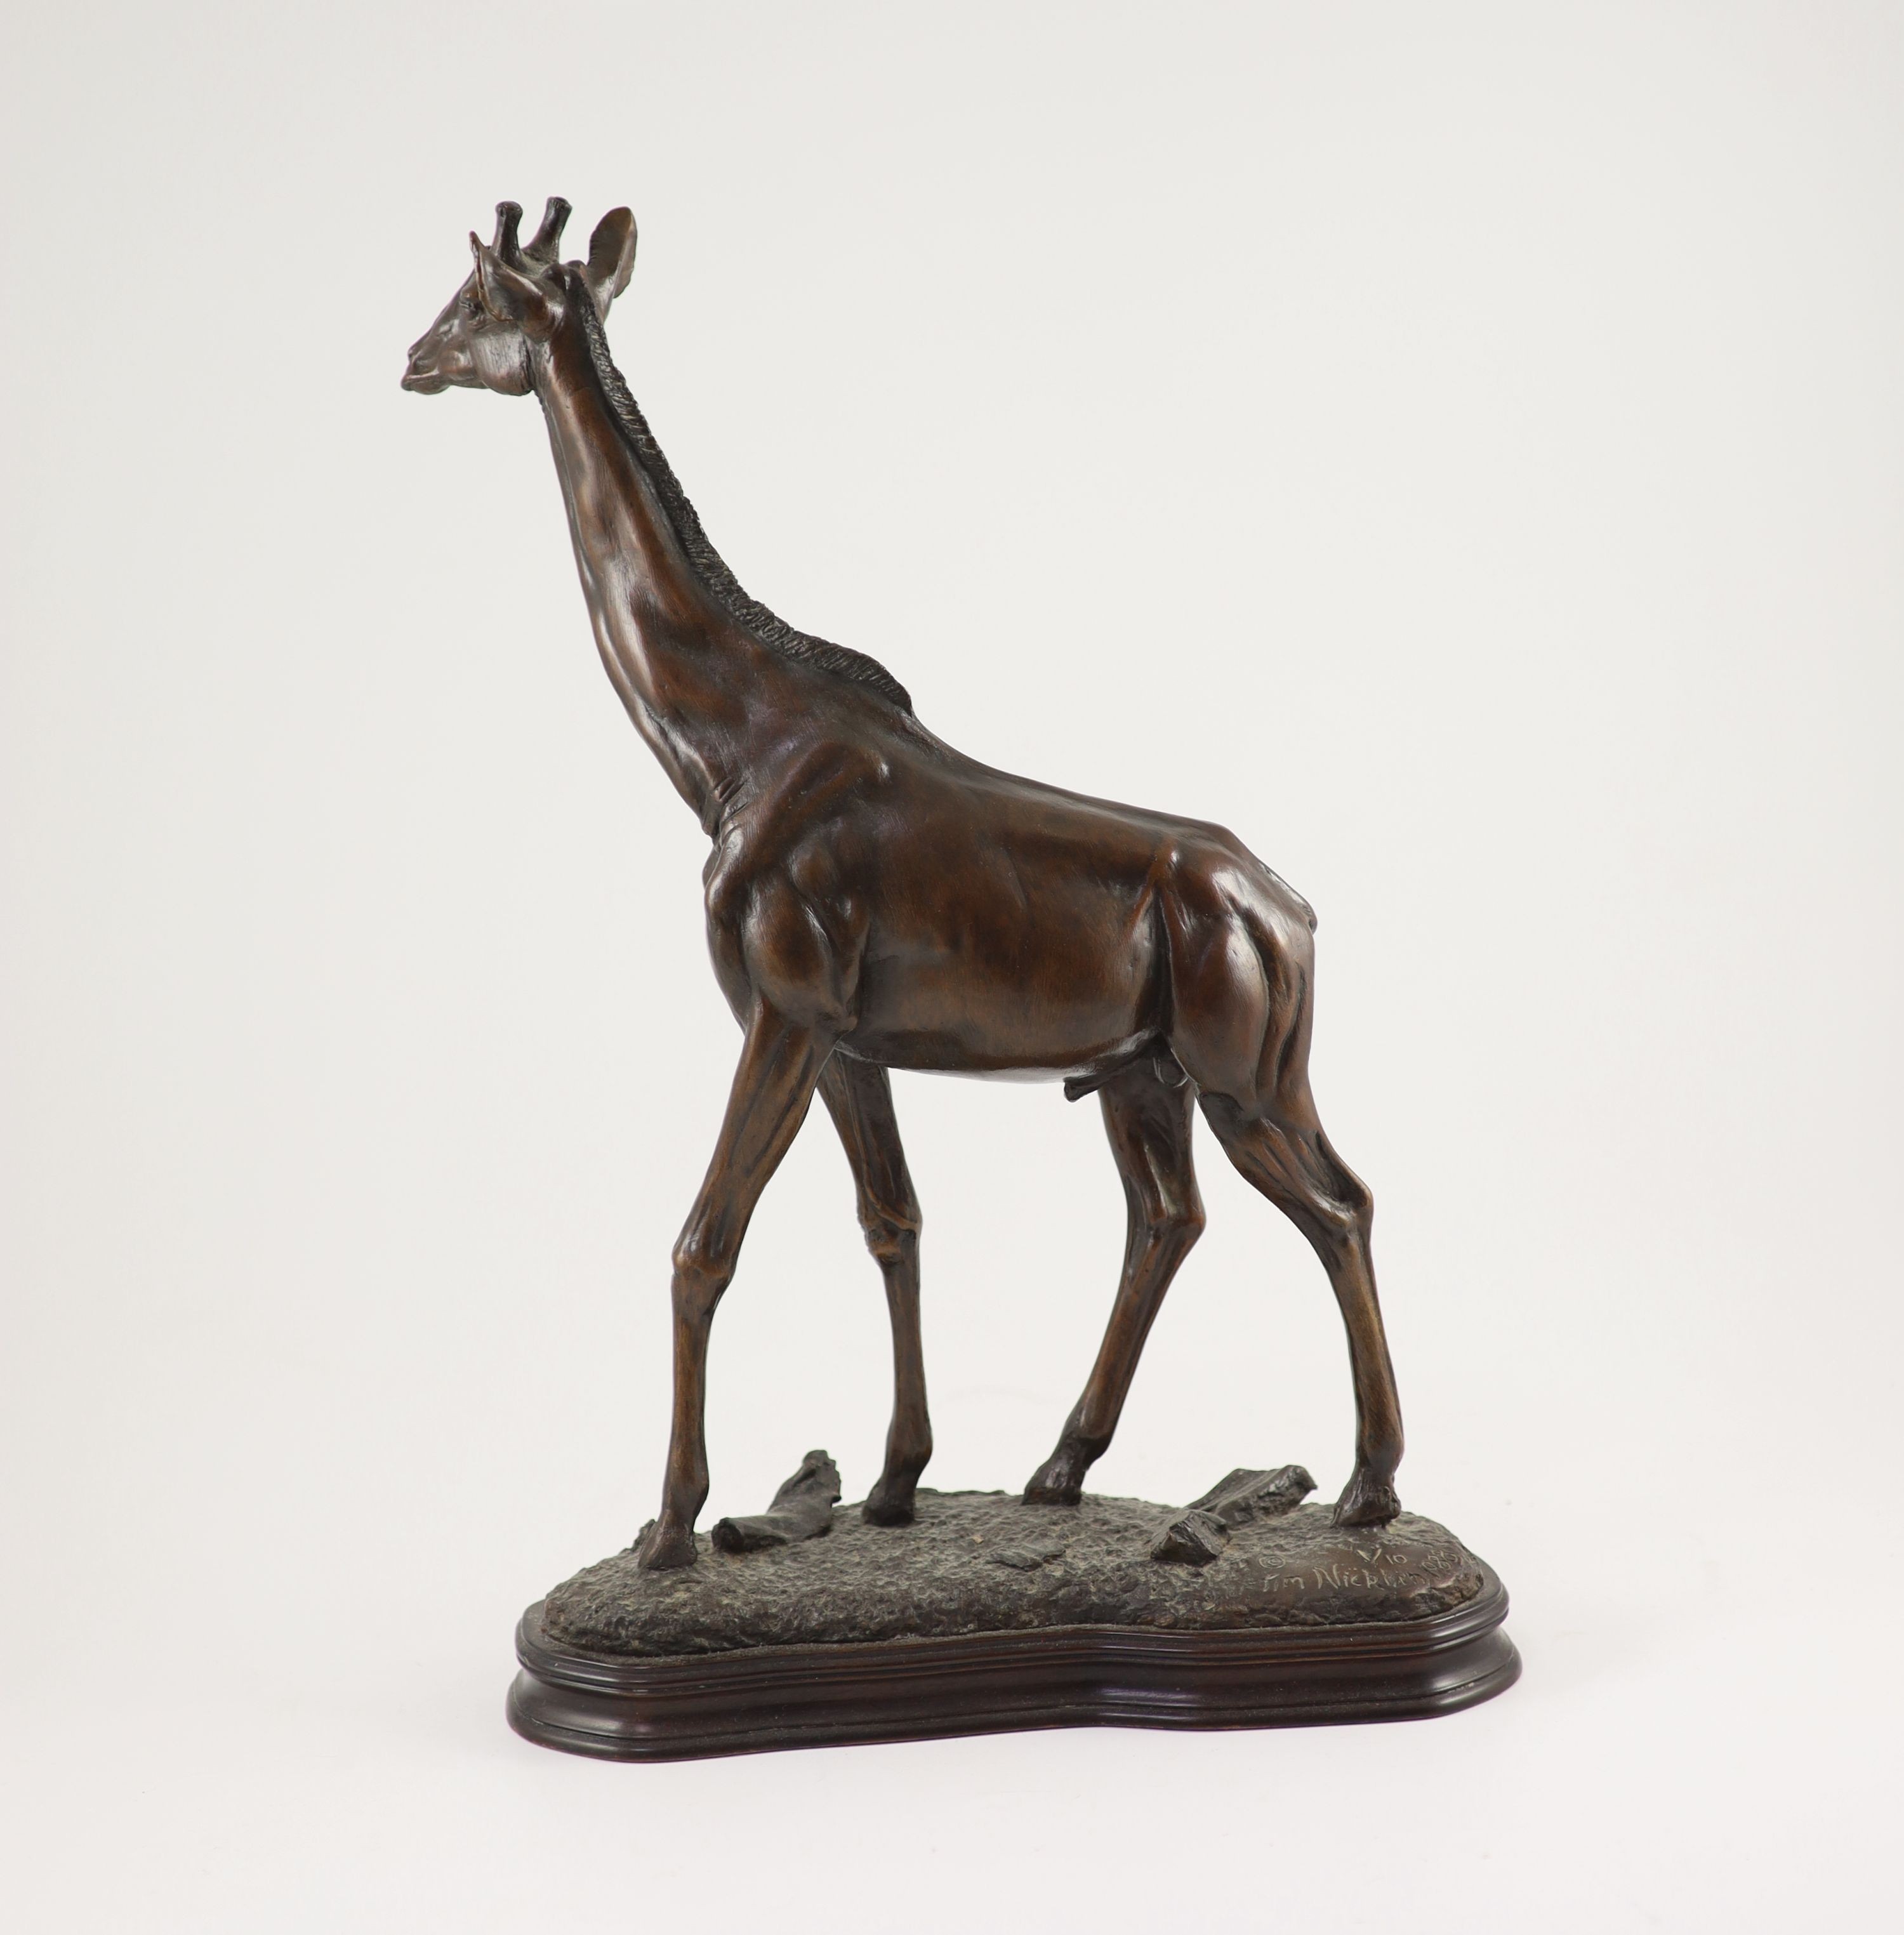 Tim Nicklin. A bronze model of a giraffe, width 30cm height 43cm